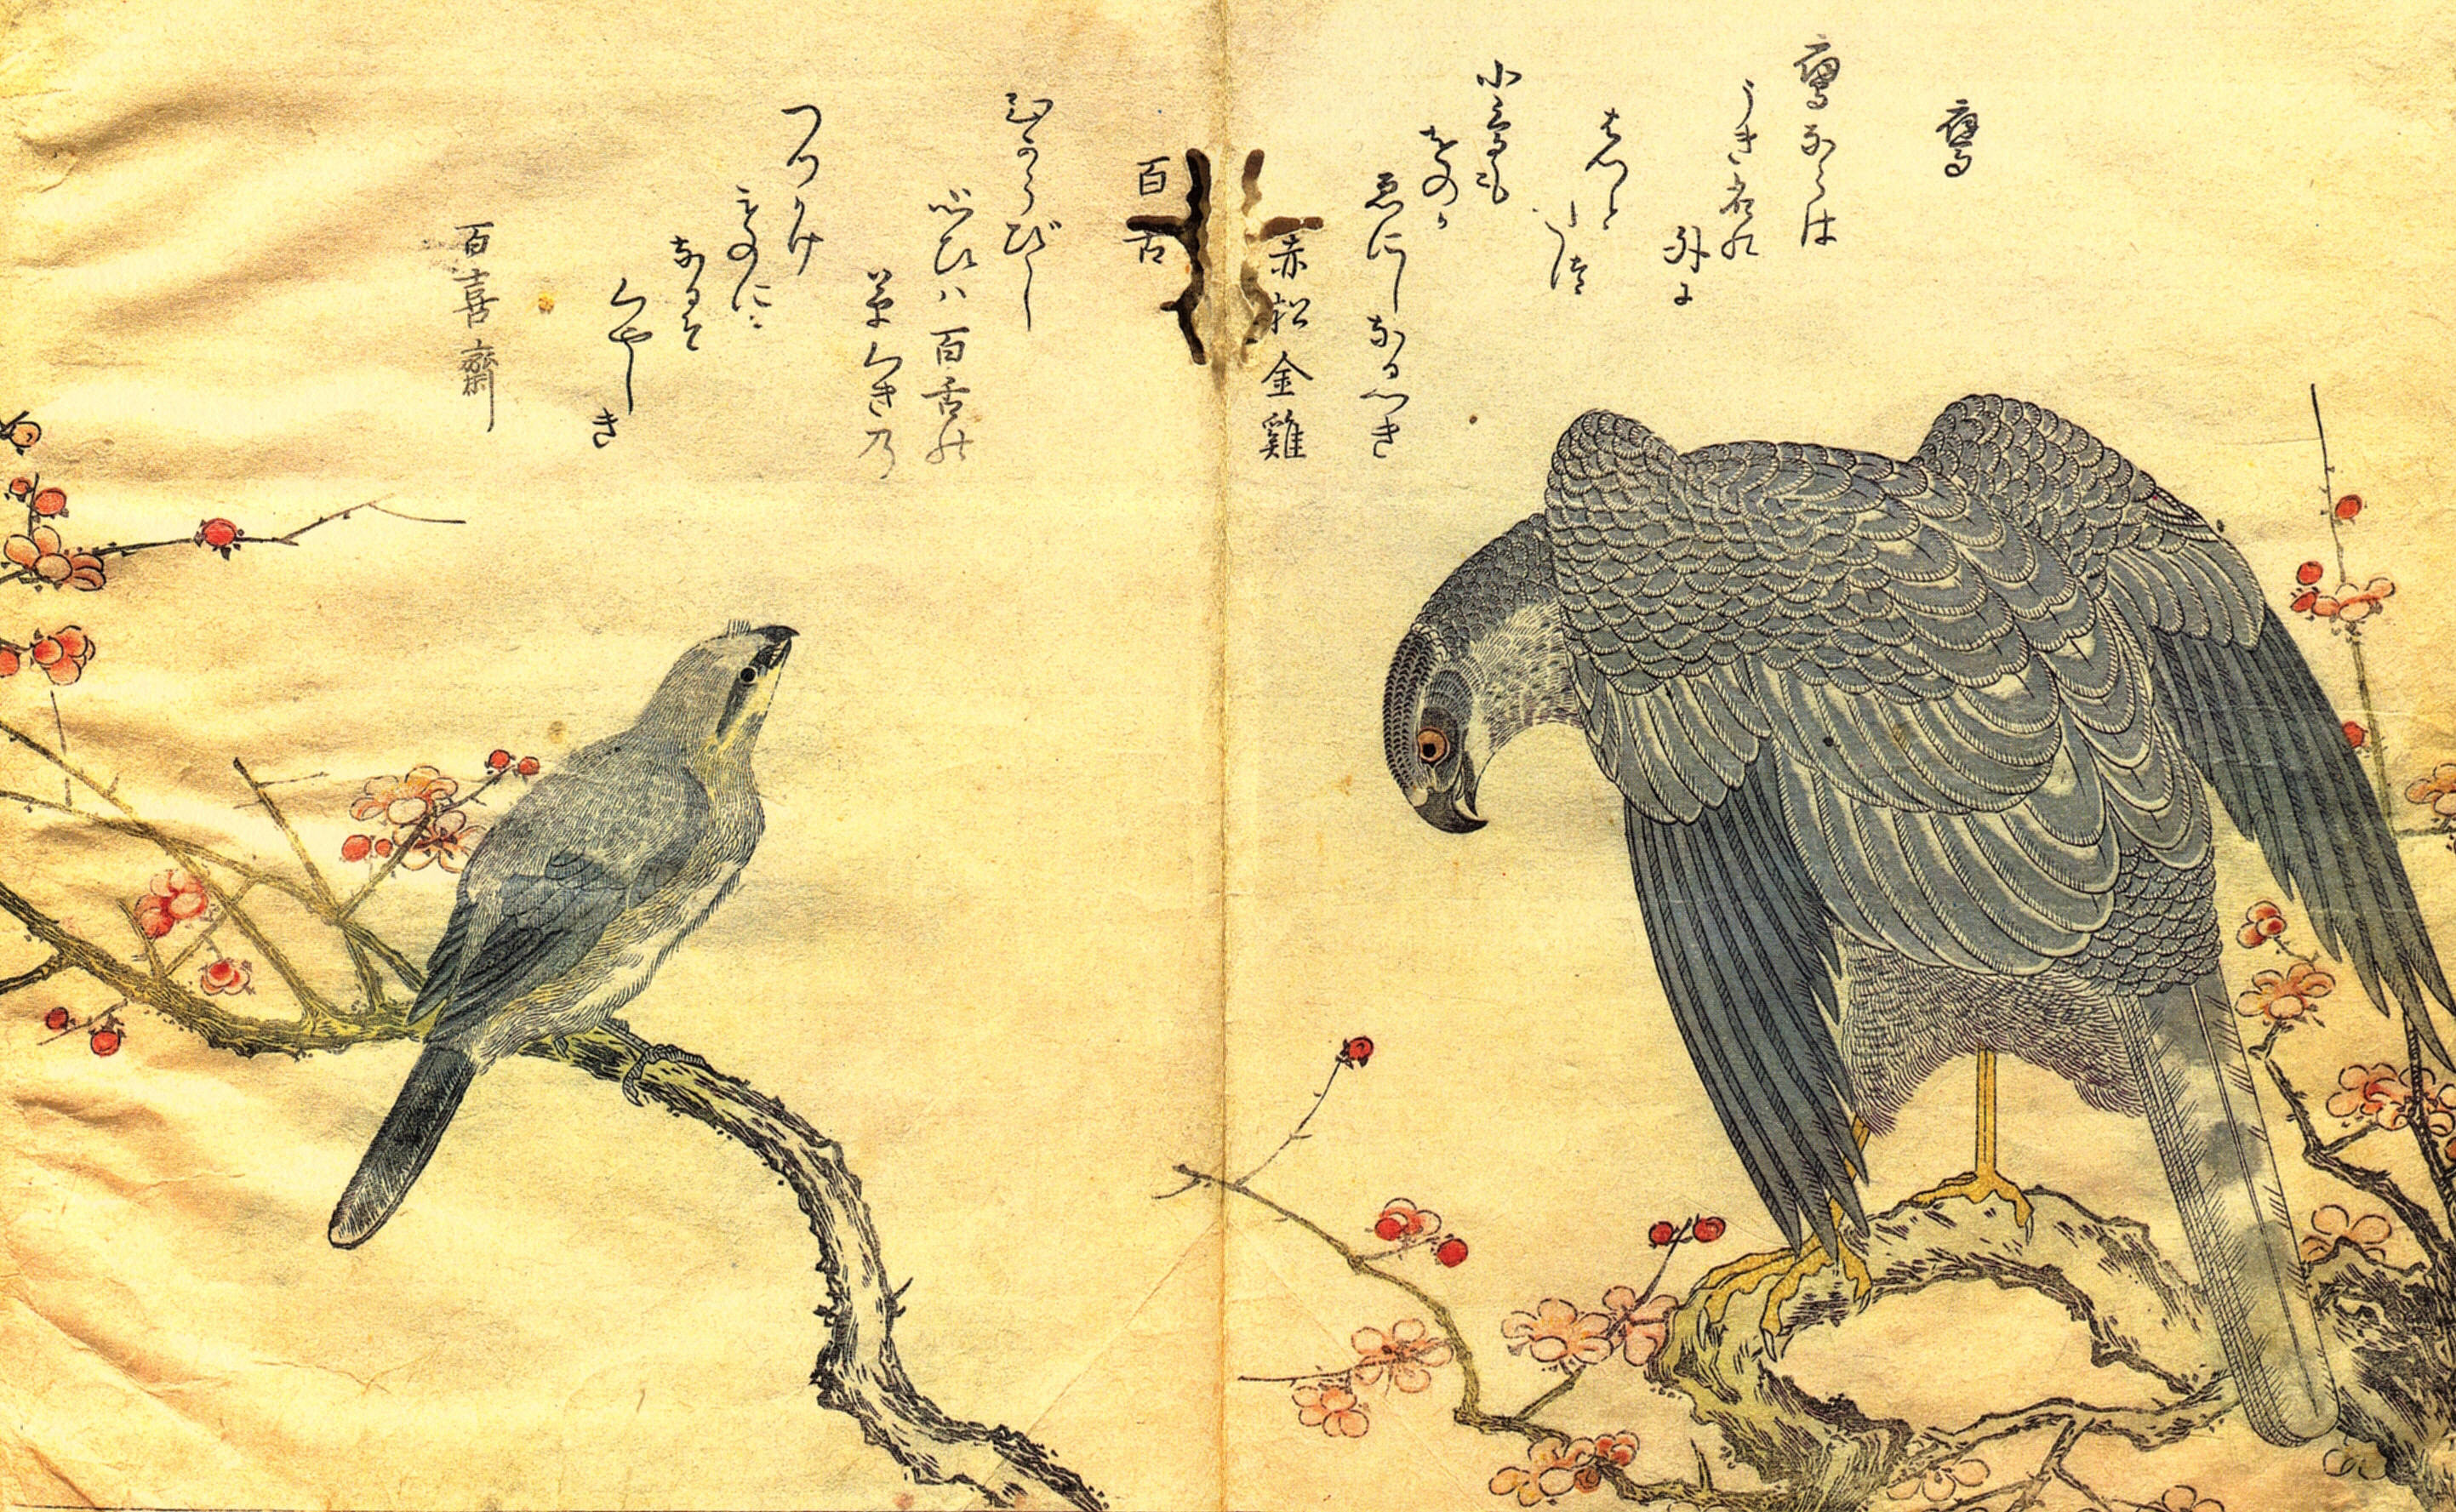 Сера птичка по китайски перевод. Японский художник Китагава Утамаро. Япония Китагава Утамаро гравюра. Ксилография в древнем Китае. Китагава Утамаро (годы жизни 1753-1806 [прожил 53 года]).